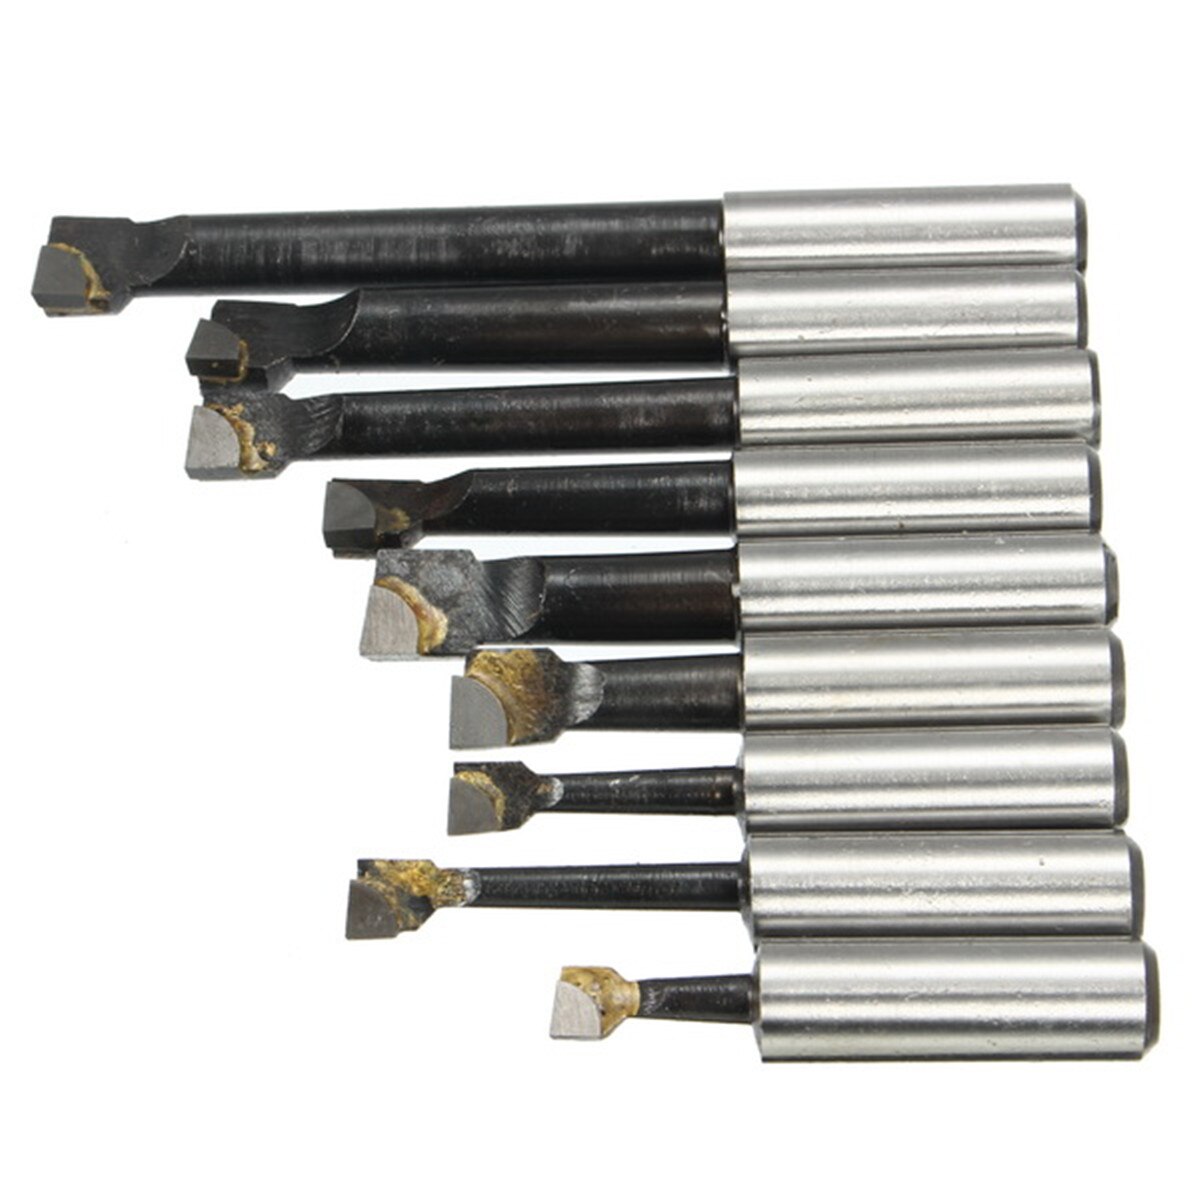 9 Stks/set 12Mm Duurzaam Schacht Kotterbaar Hardmetalen Boring Tool Voor 50Mm MT3-M12 Morse Taper Boring Bar draaibank Frezen